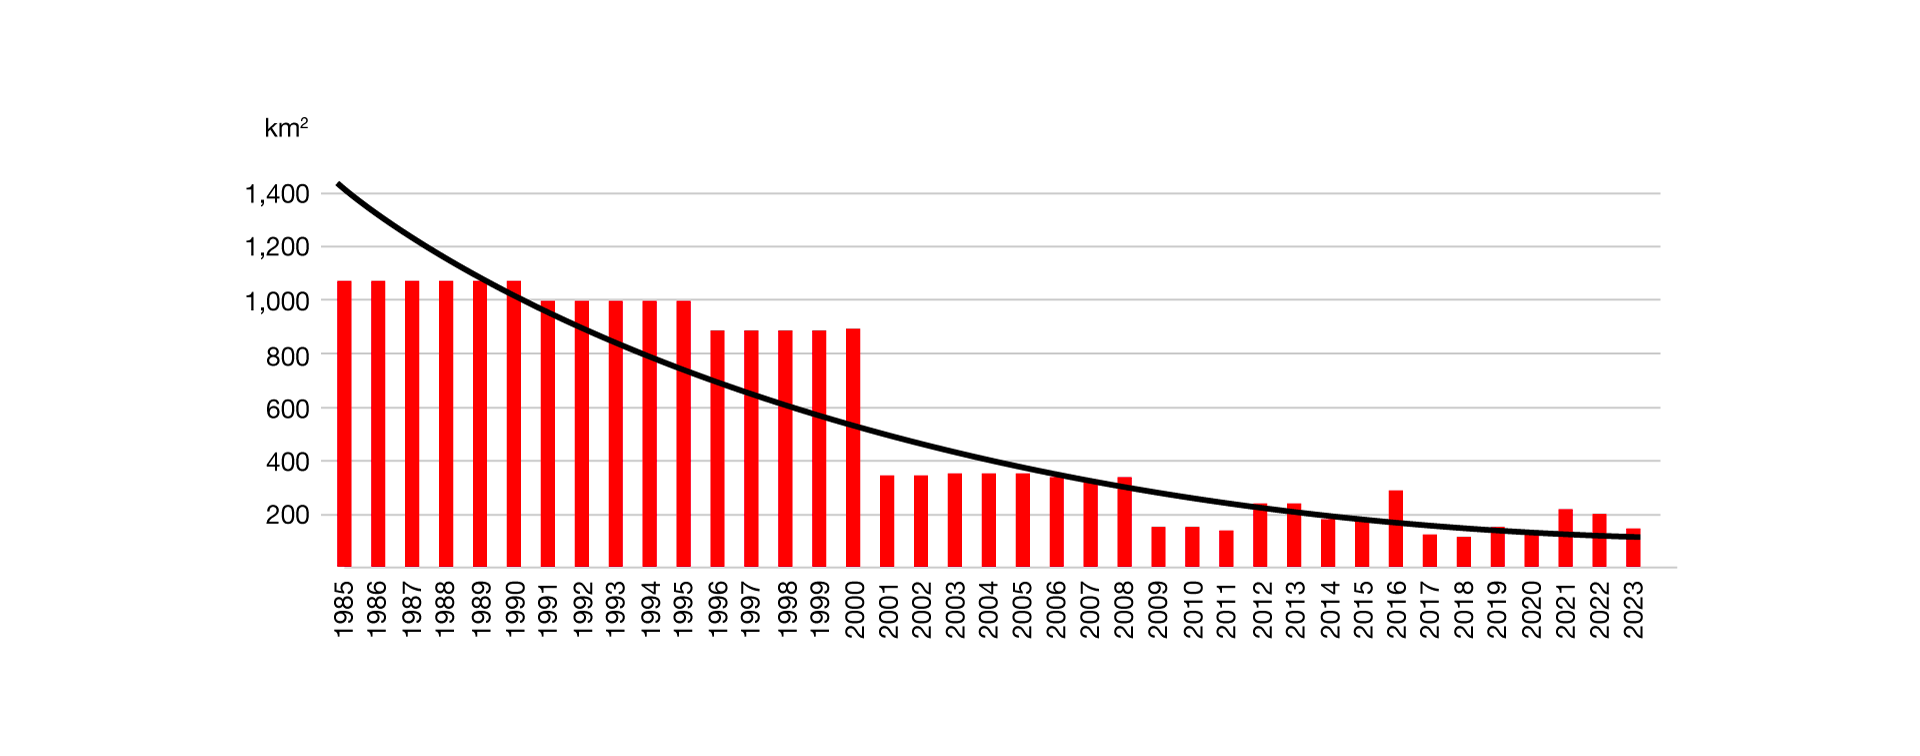 Gráfico de tendência de desmatamento na Mata Atlântica de 1985 a 2023